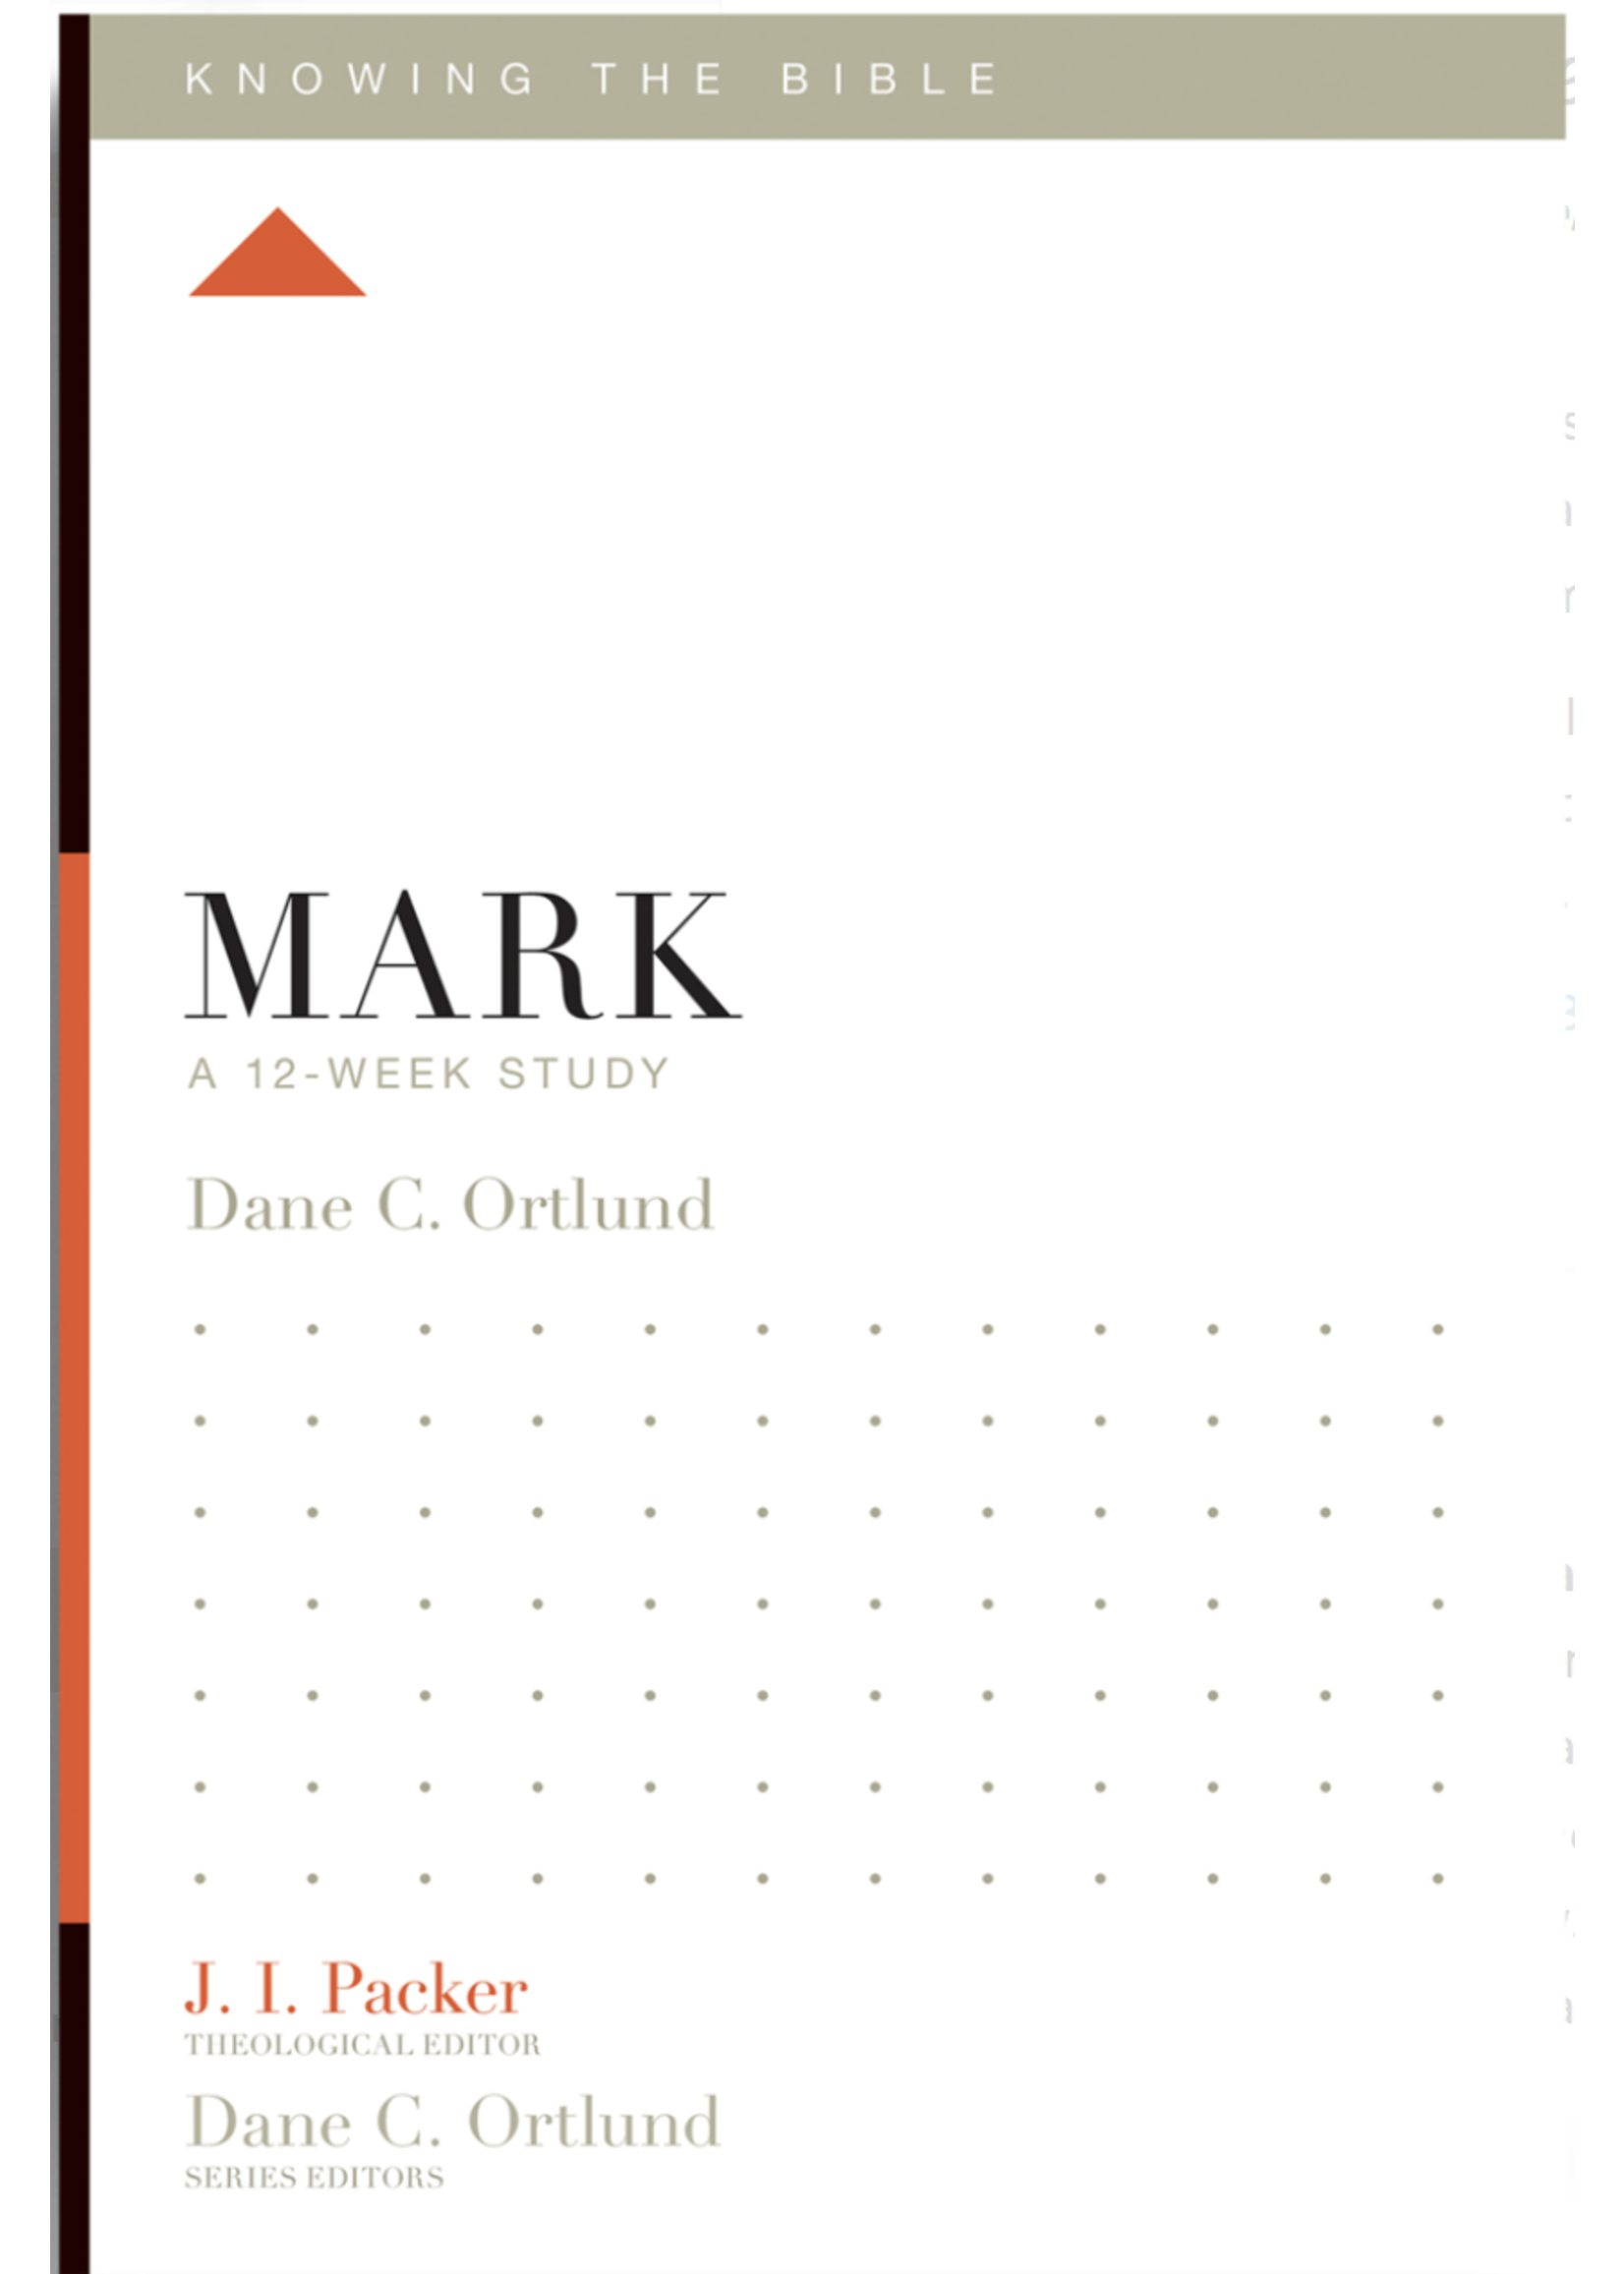 Ortlund, Dane Mark: A 12 Week Study